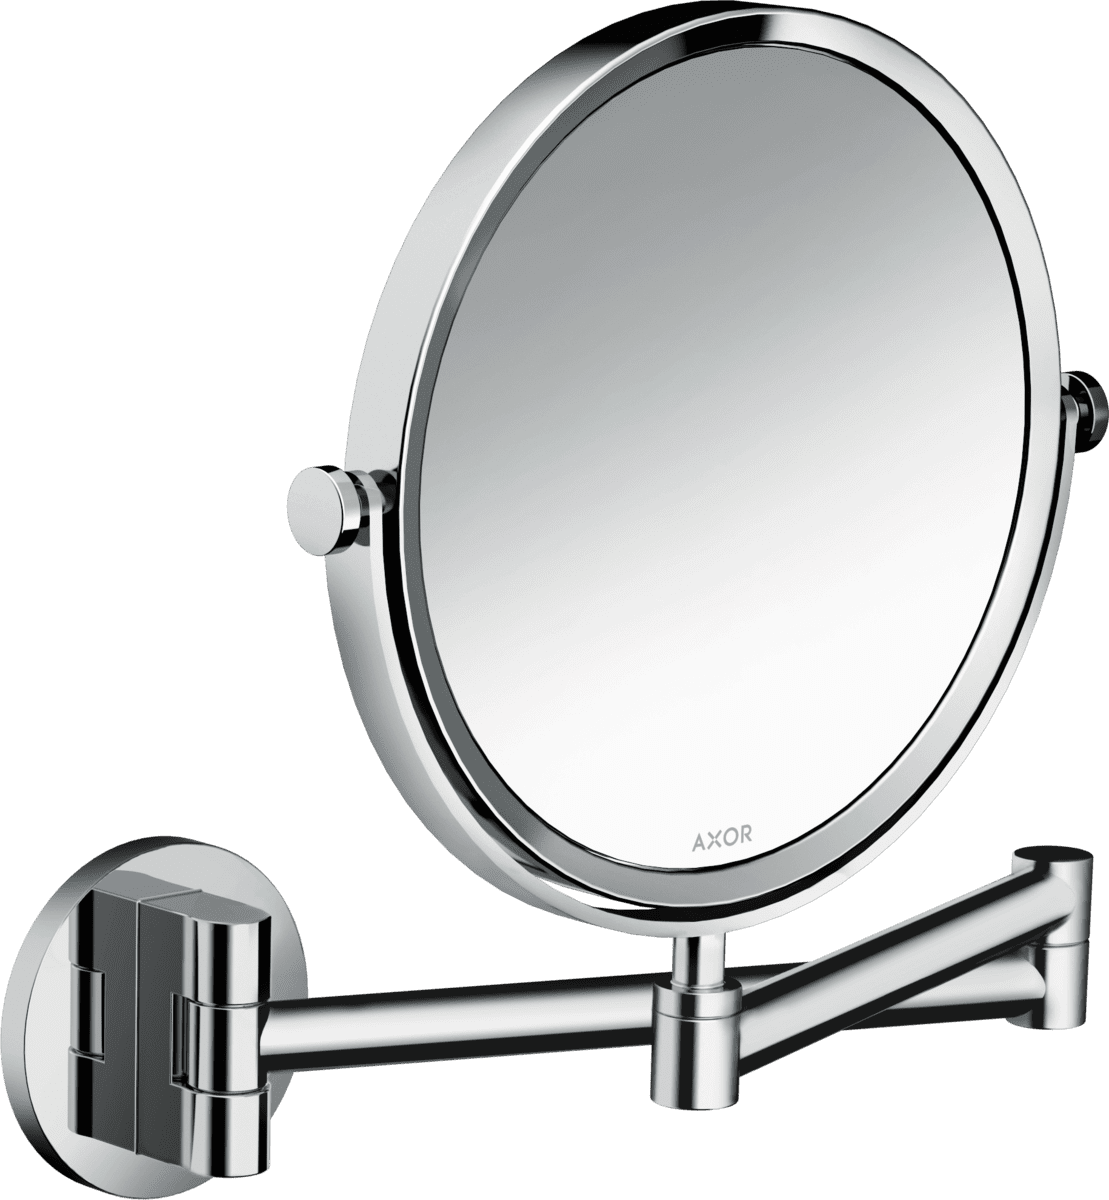 Obrázek HANSGROHE AXOR Universal Circular kosmetické zrcadlo #42849000 - chrom